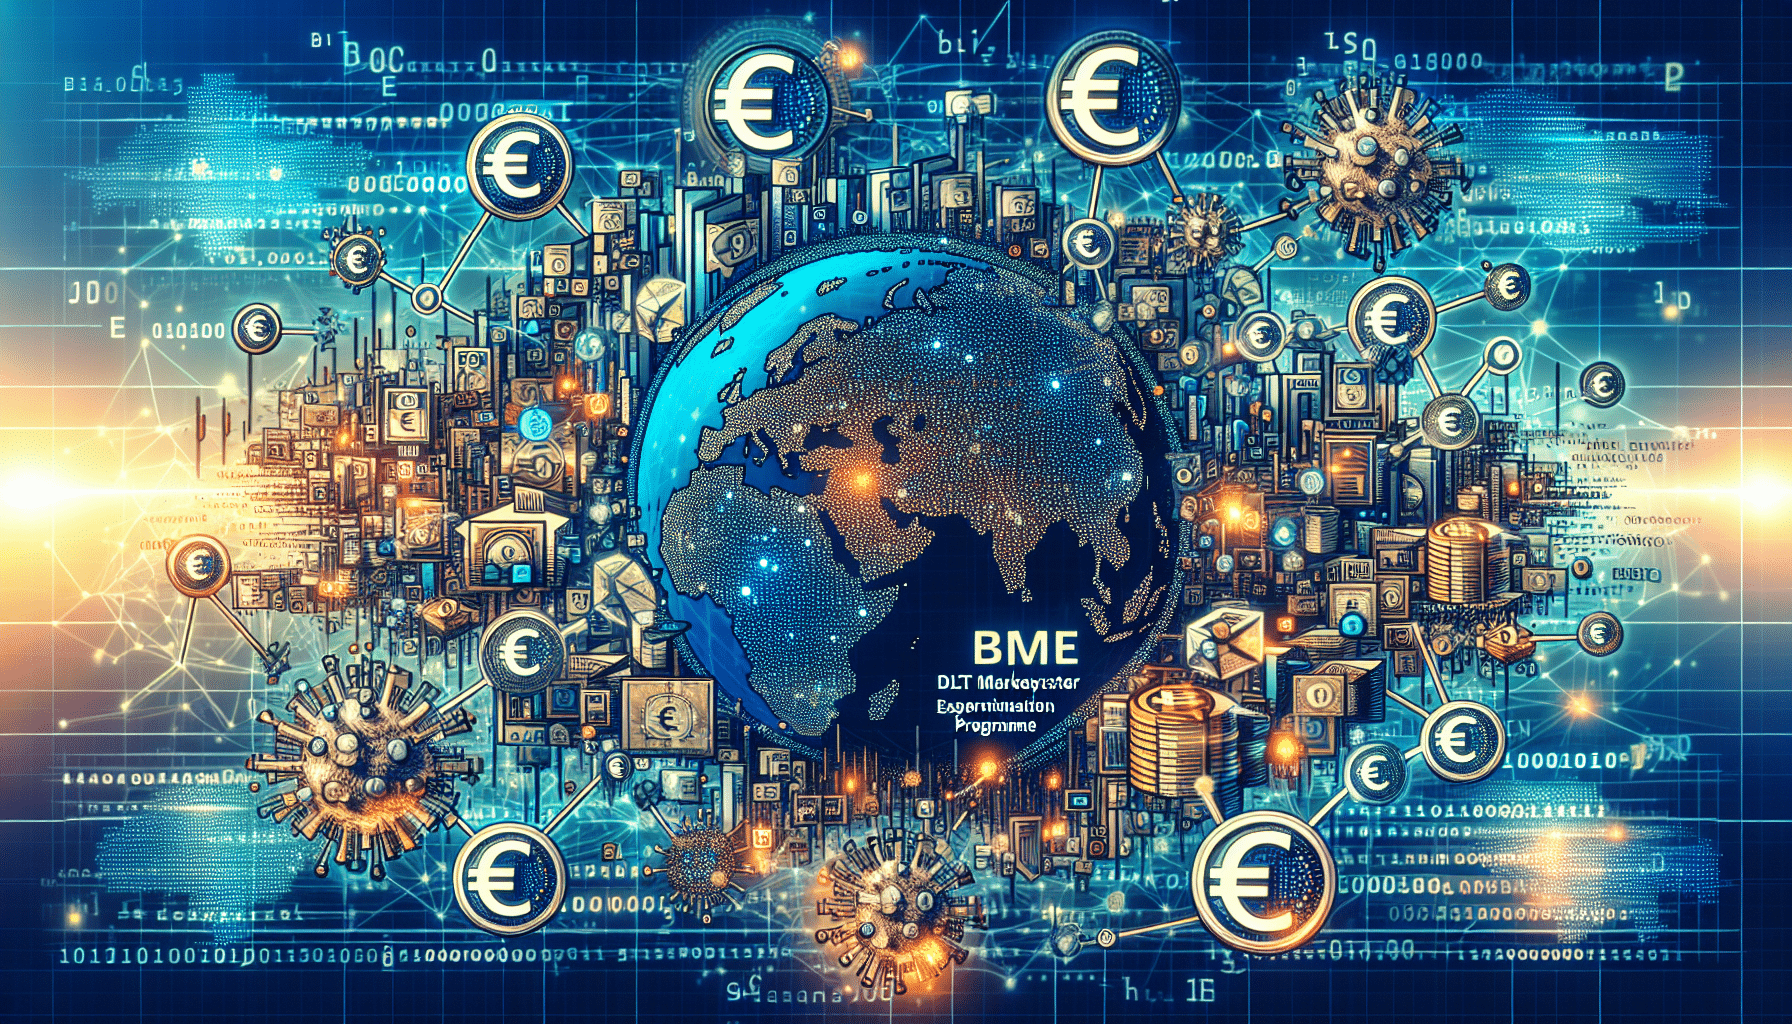 BME participa como operador DLT de mercado en el programa de experimentación del Eurosistema